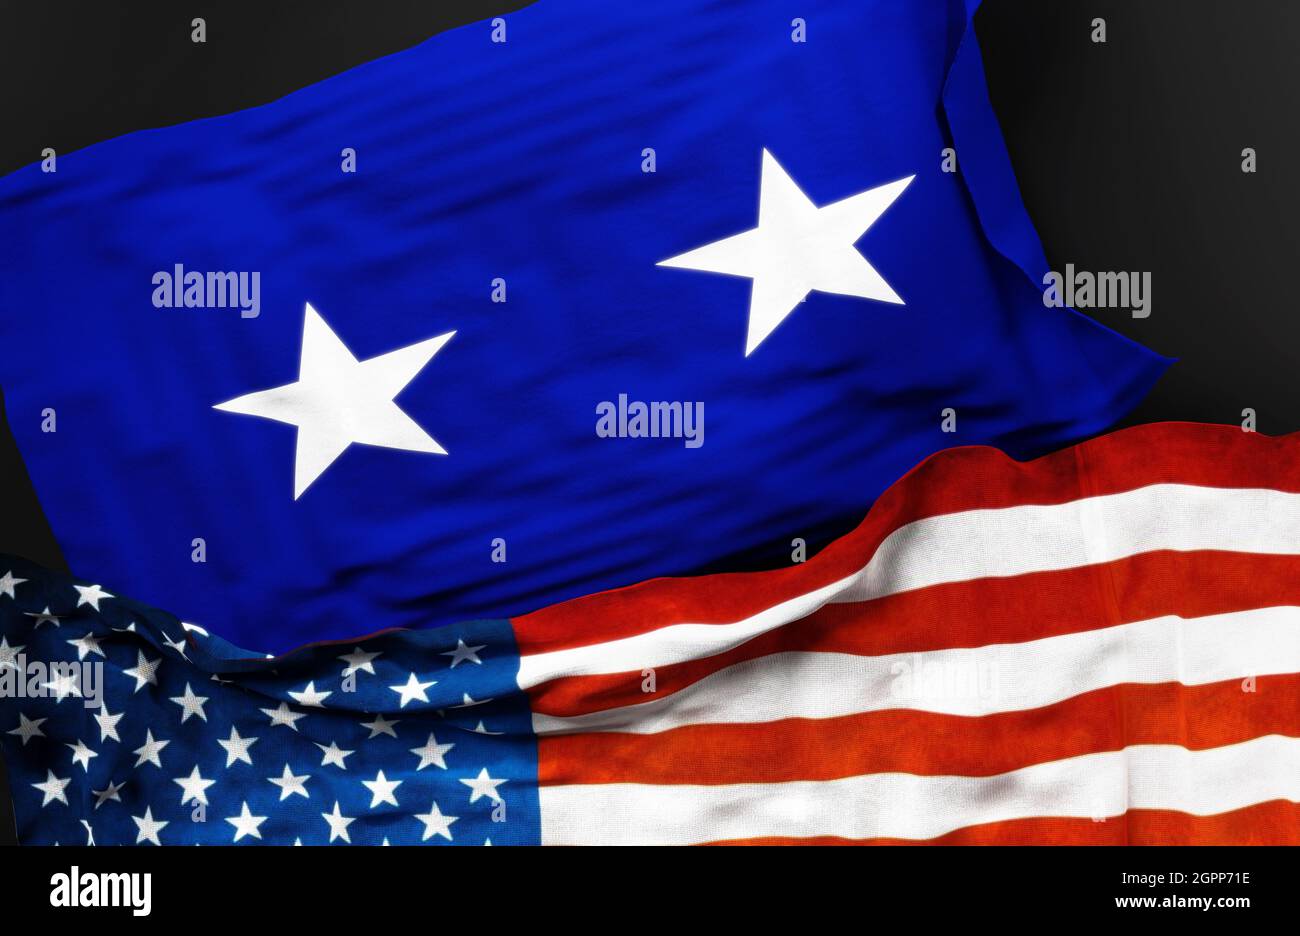 Bandera de un General de División de la Fuerza Aérea de los Estados Unidos junto con una bandera de los Estados Unidos de América como símbolo de unidad entre ellos, ilustración 3D Foto de stock